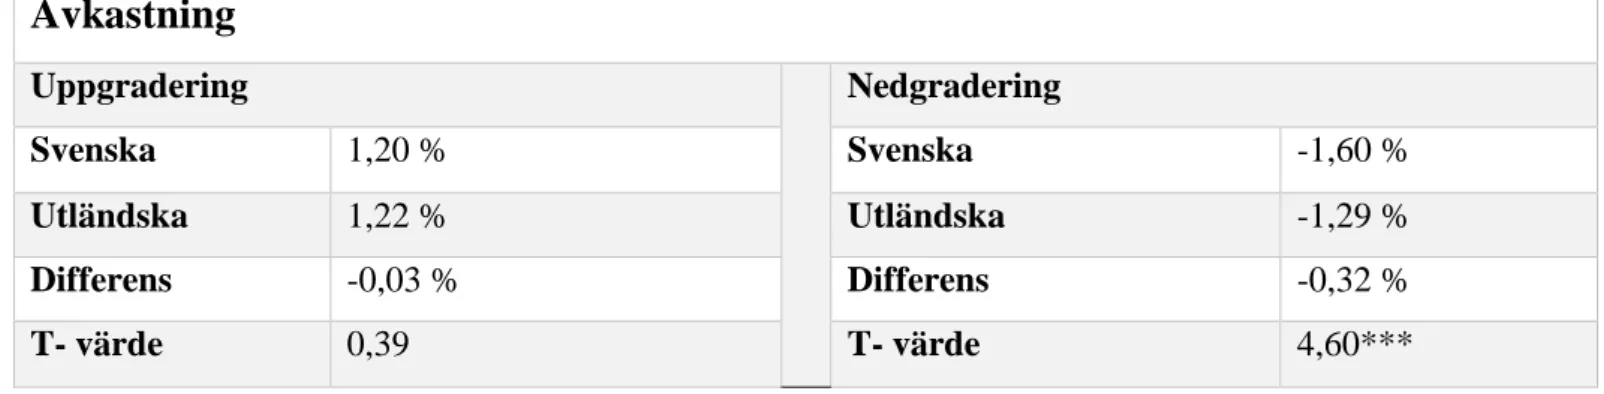 Tabell 6: Resultat från T-testet gällande om det återfinns en större kumulativ avkastning när  det gäller svenska upp- eller nedgraderingar i jämförelse med utländska